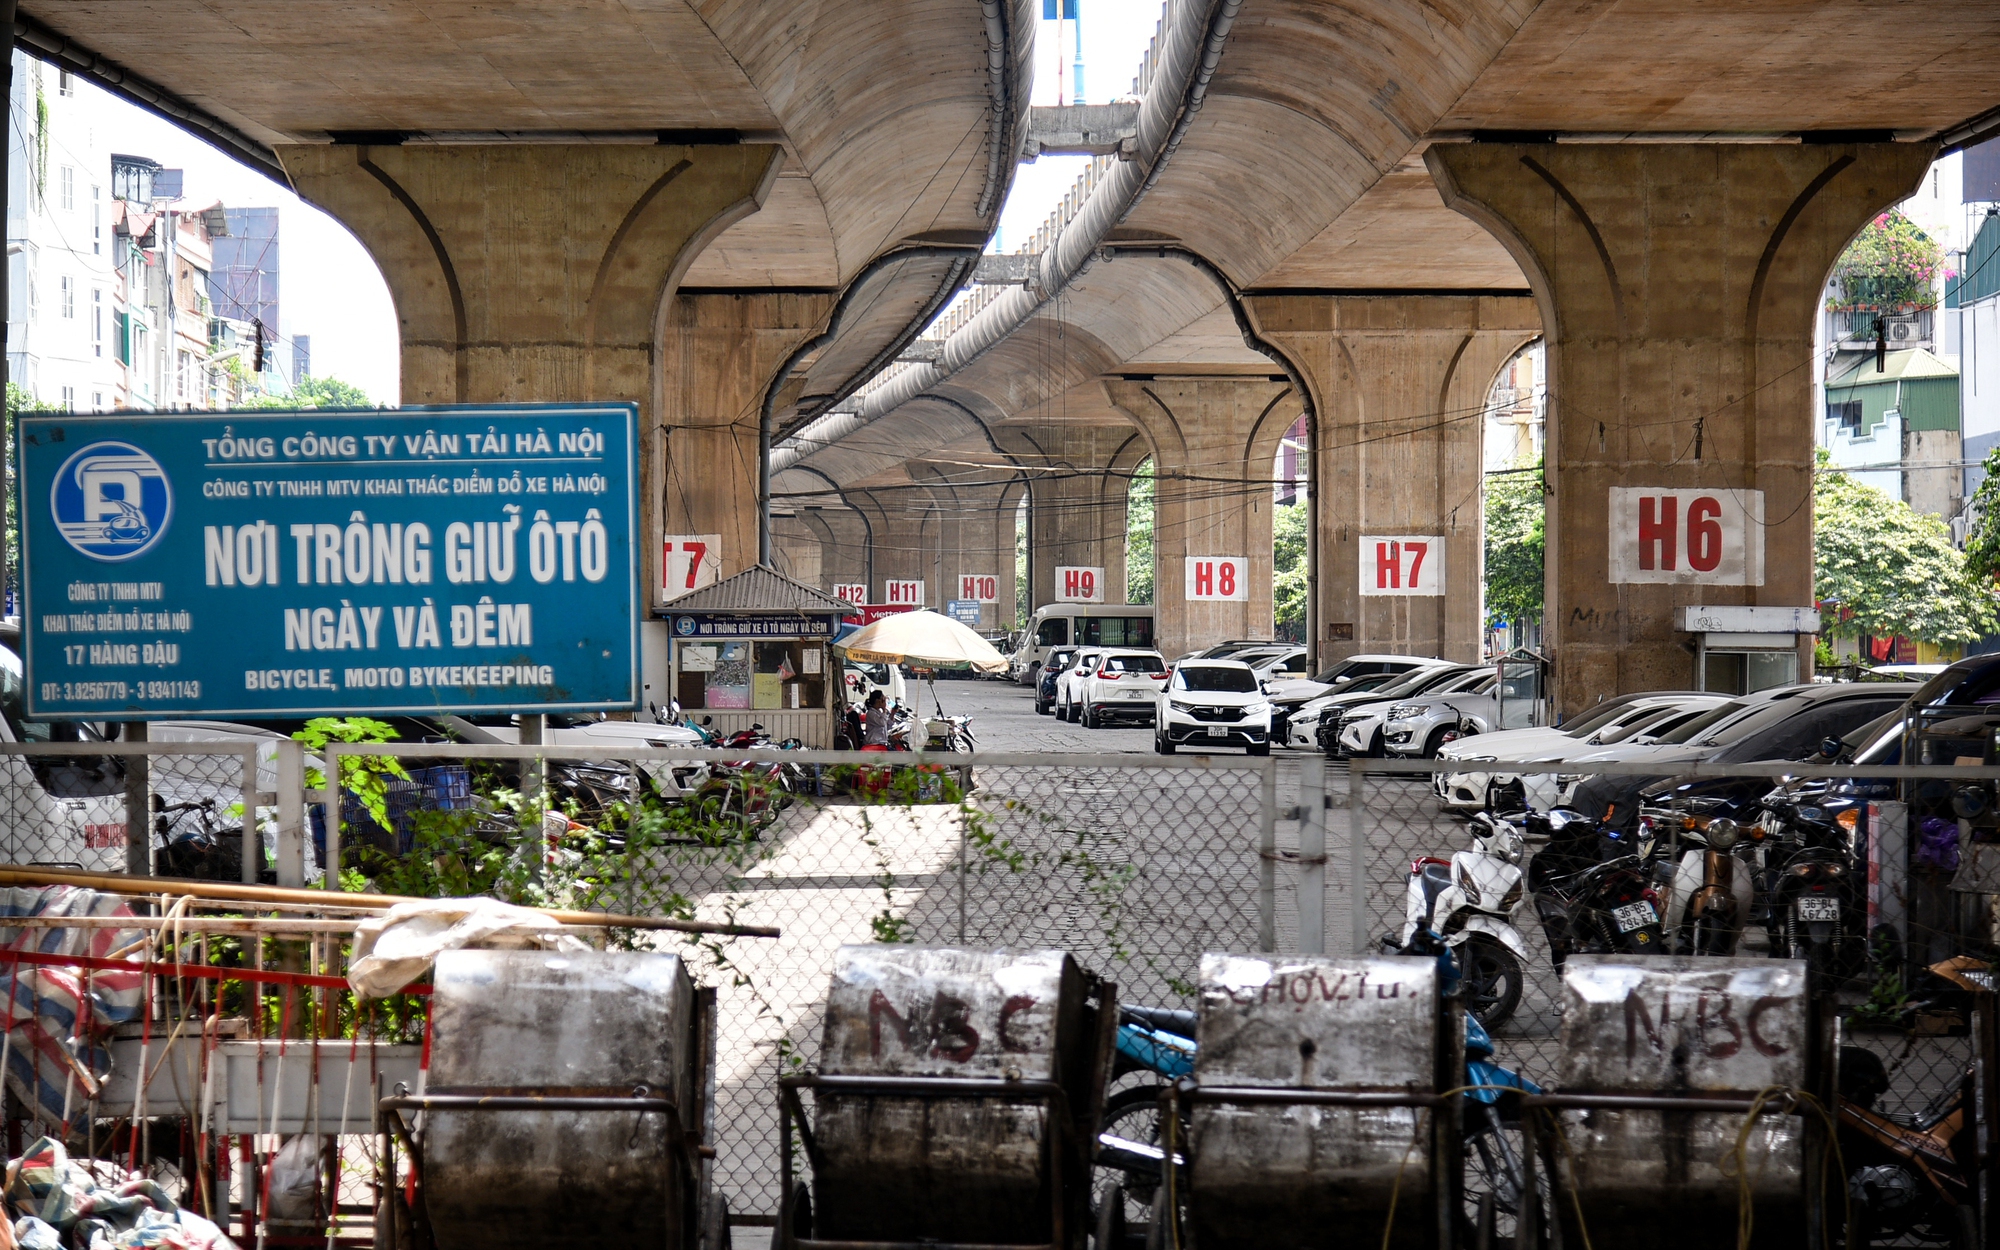 Hiện trạng các gầm cầu cạn sử dụng làm bãi đỗ xe ở Hà Nội